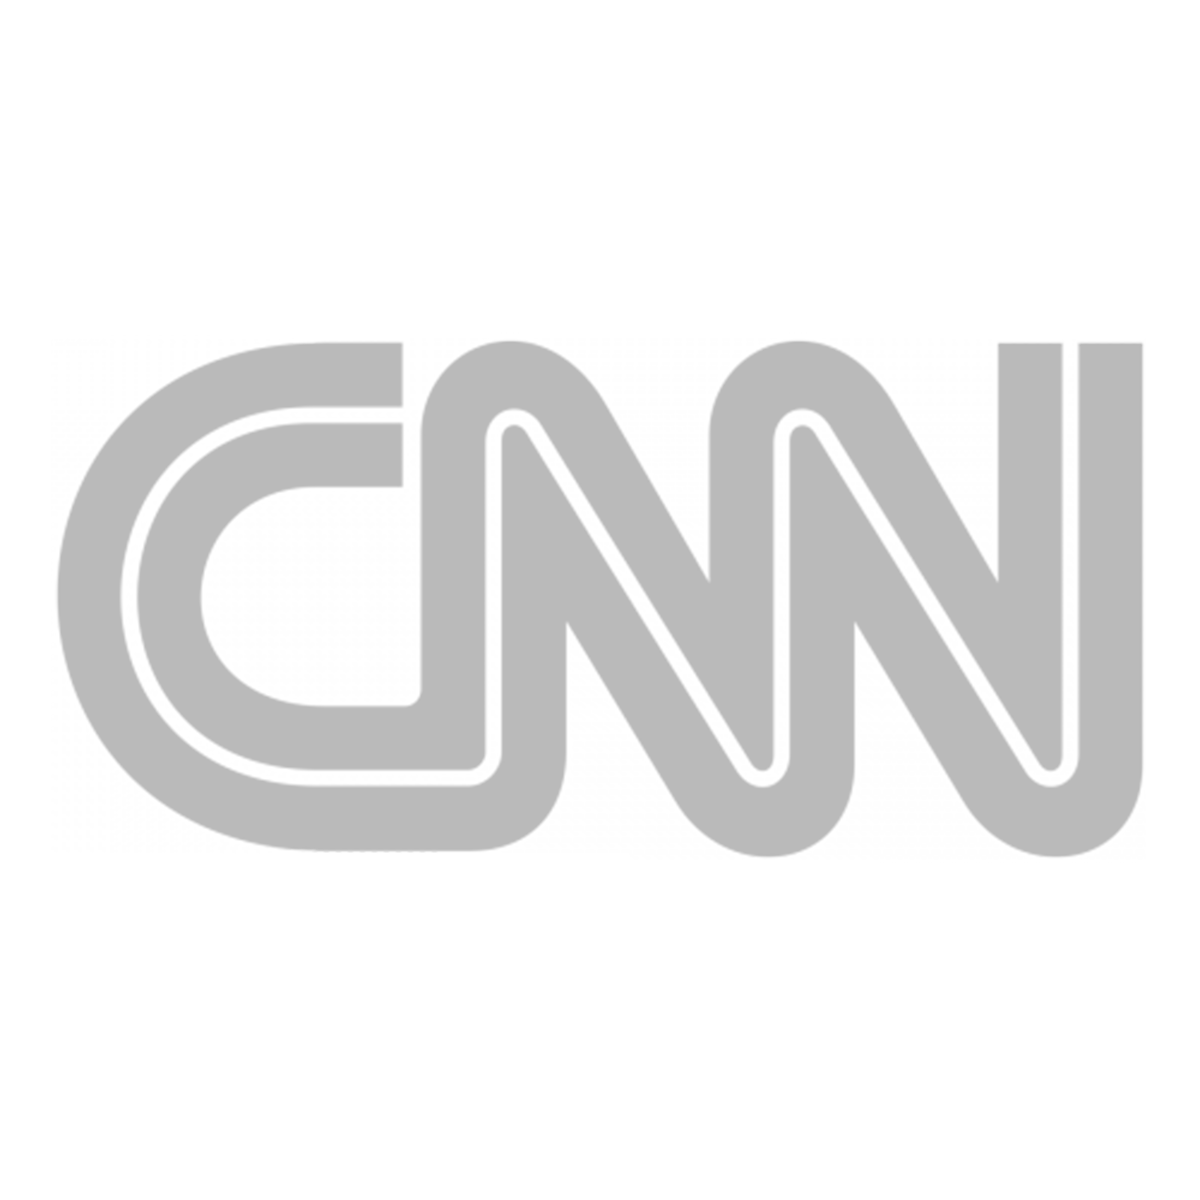 CNN-Logo.png